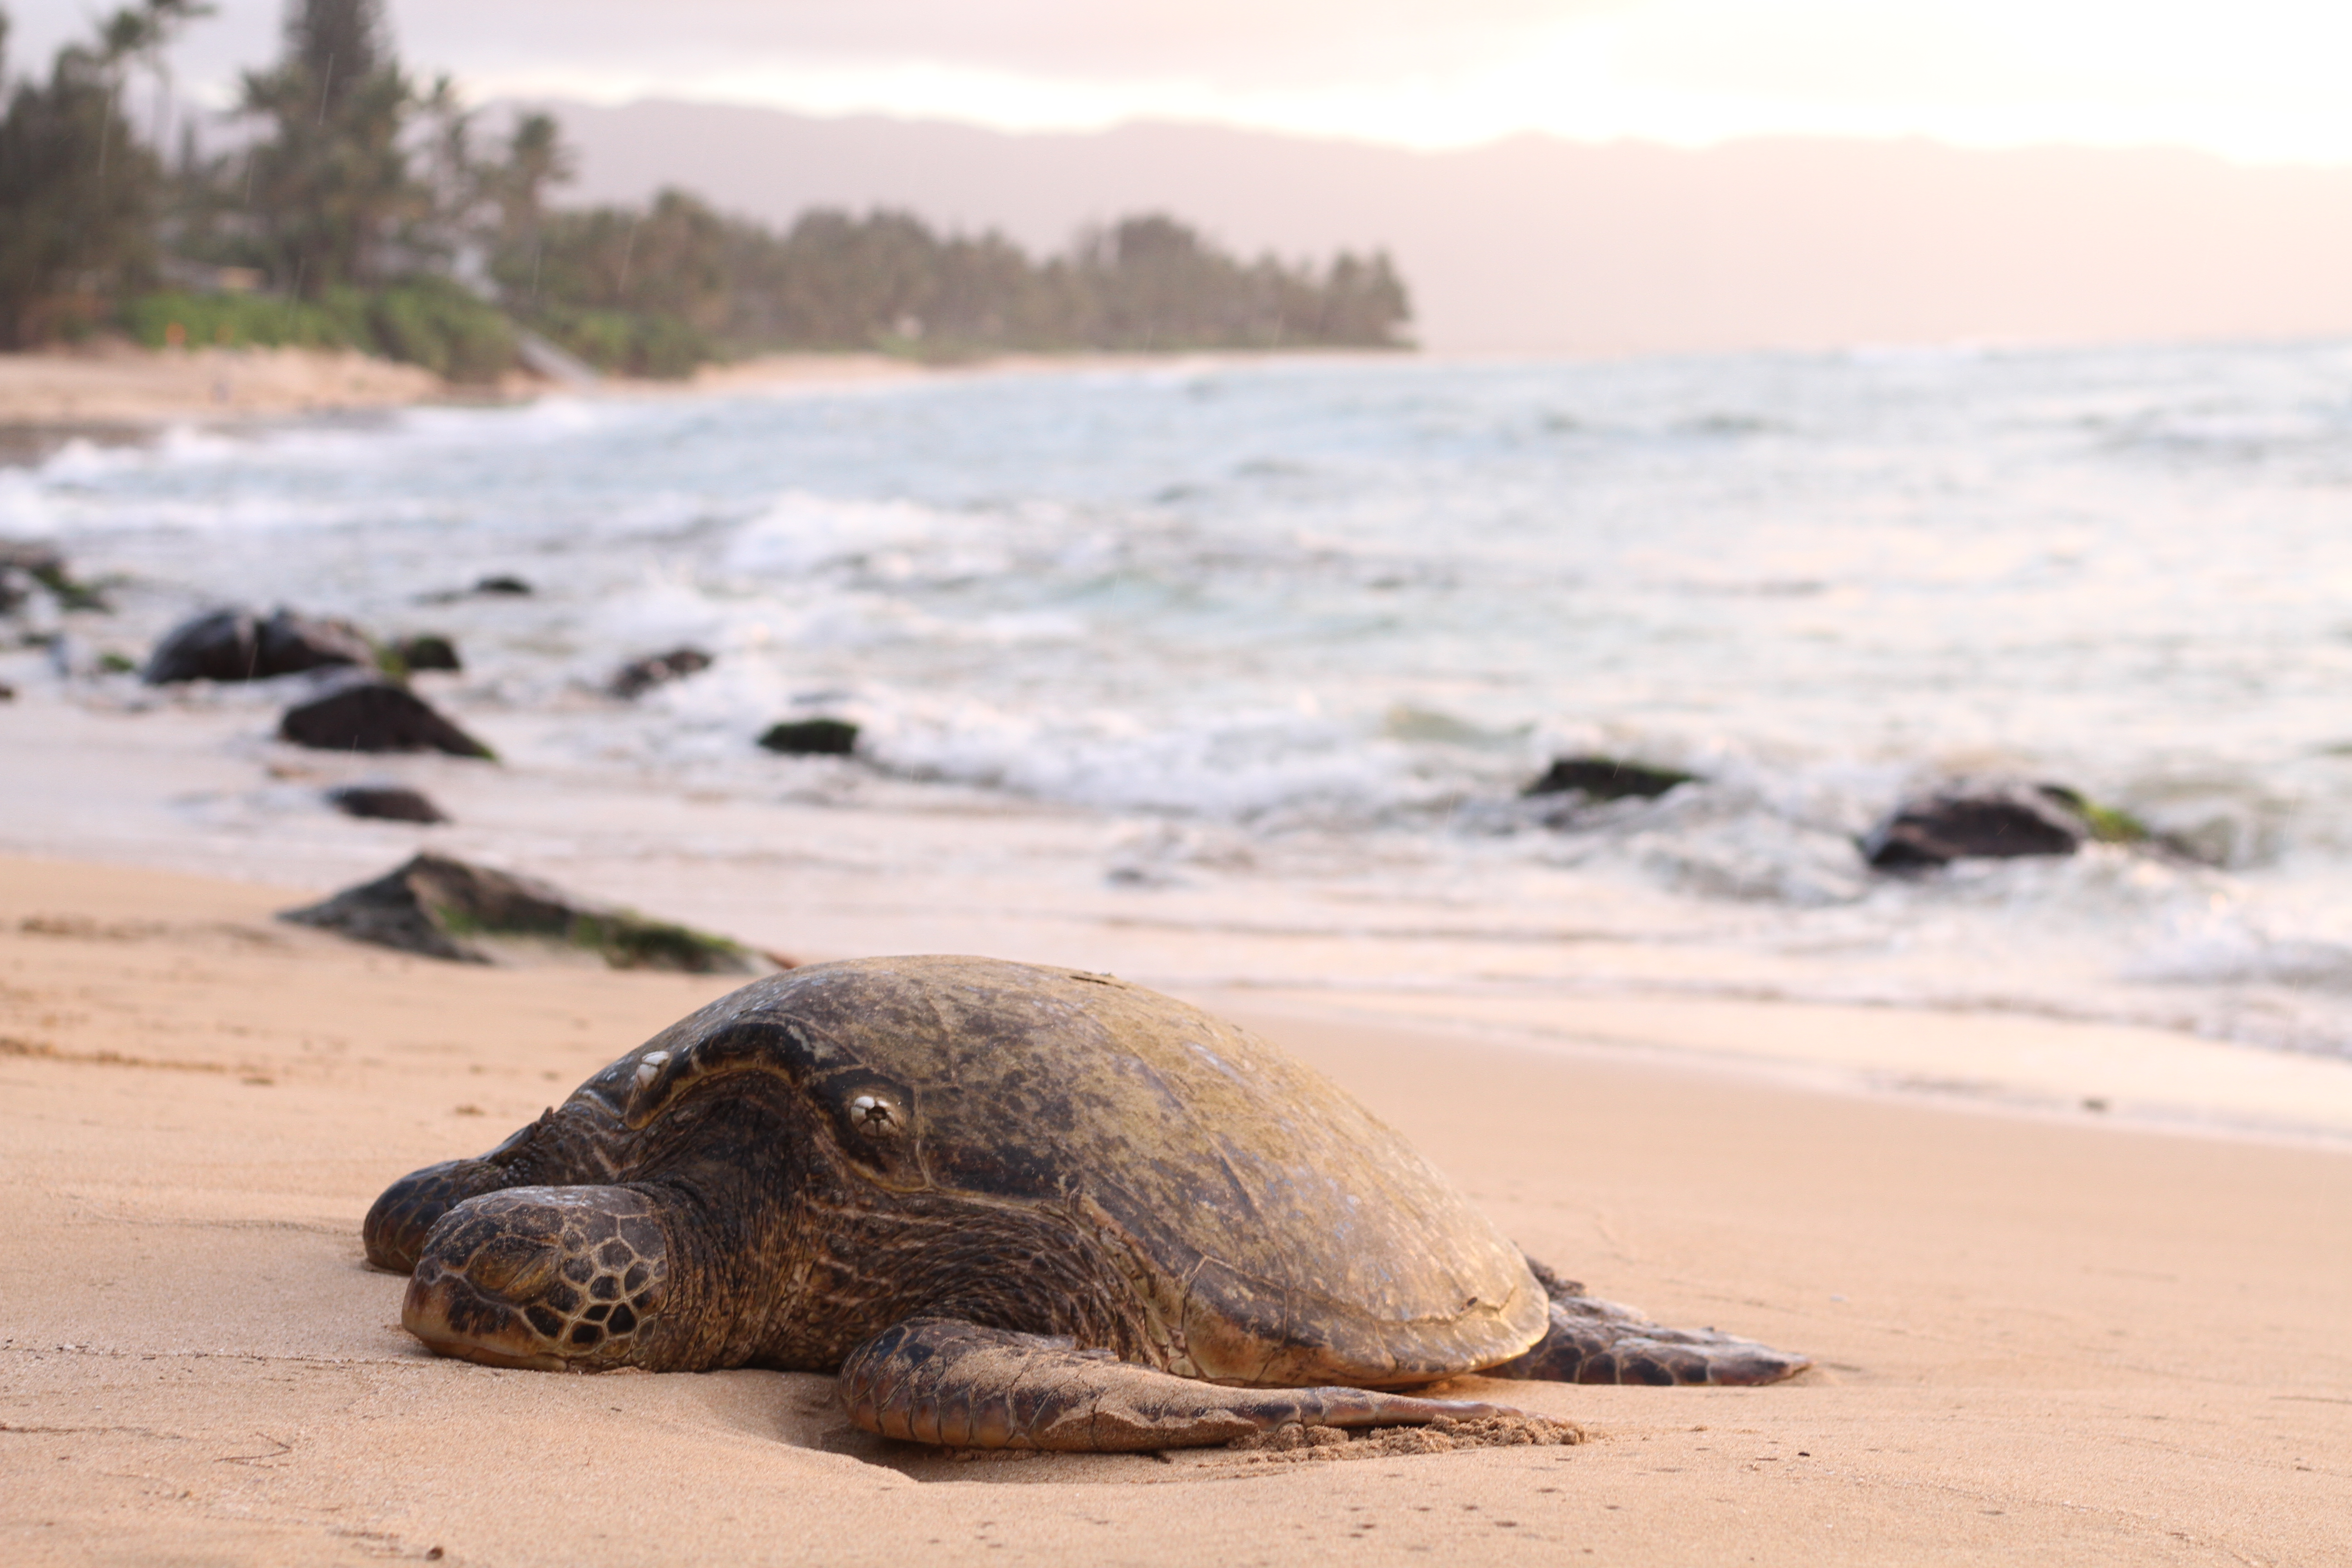 Big turtle on sand beach